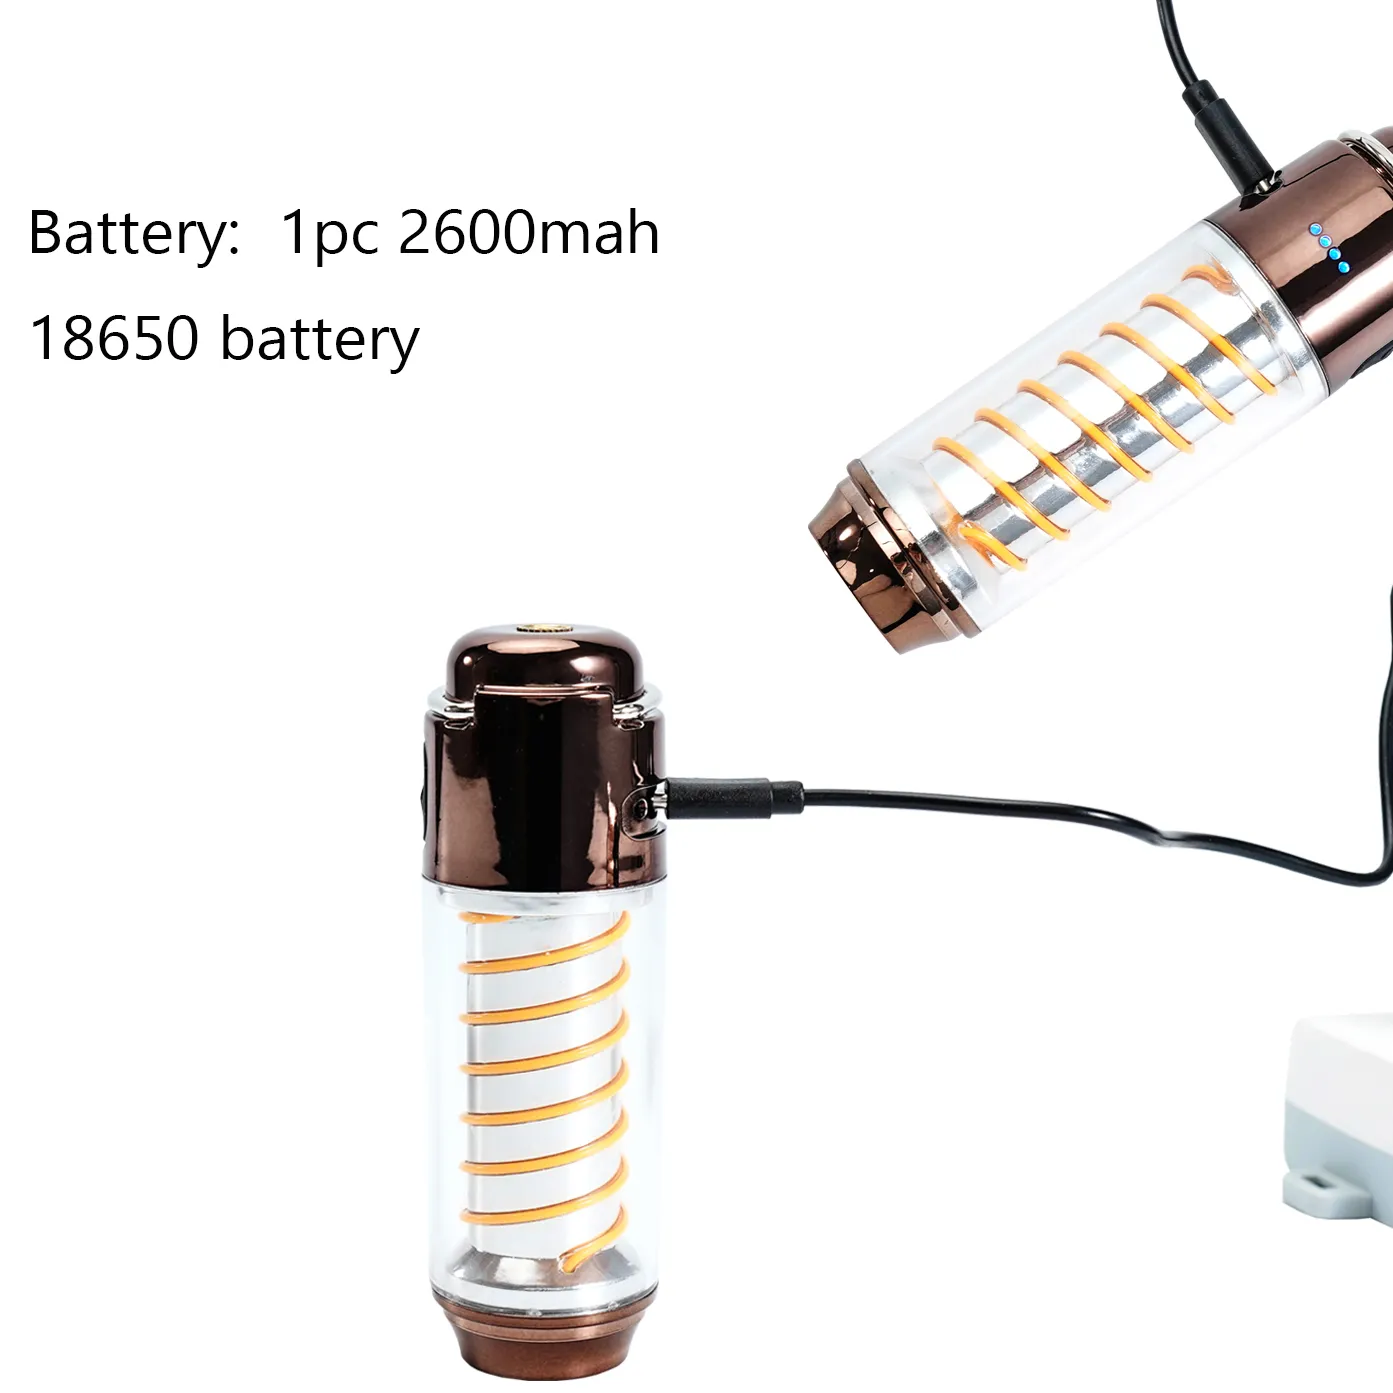 日本製ズーム可能ハンドヘルドポータブルテントLEDキャンプ懐中電灯USB充電式キャンプライトパワーバンク & サイドライト付き